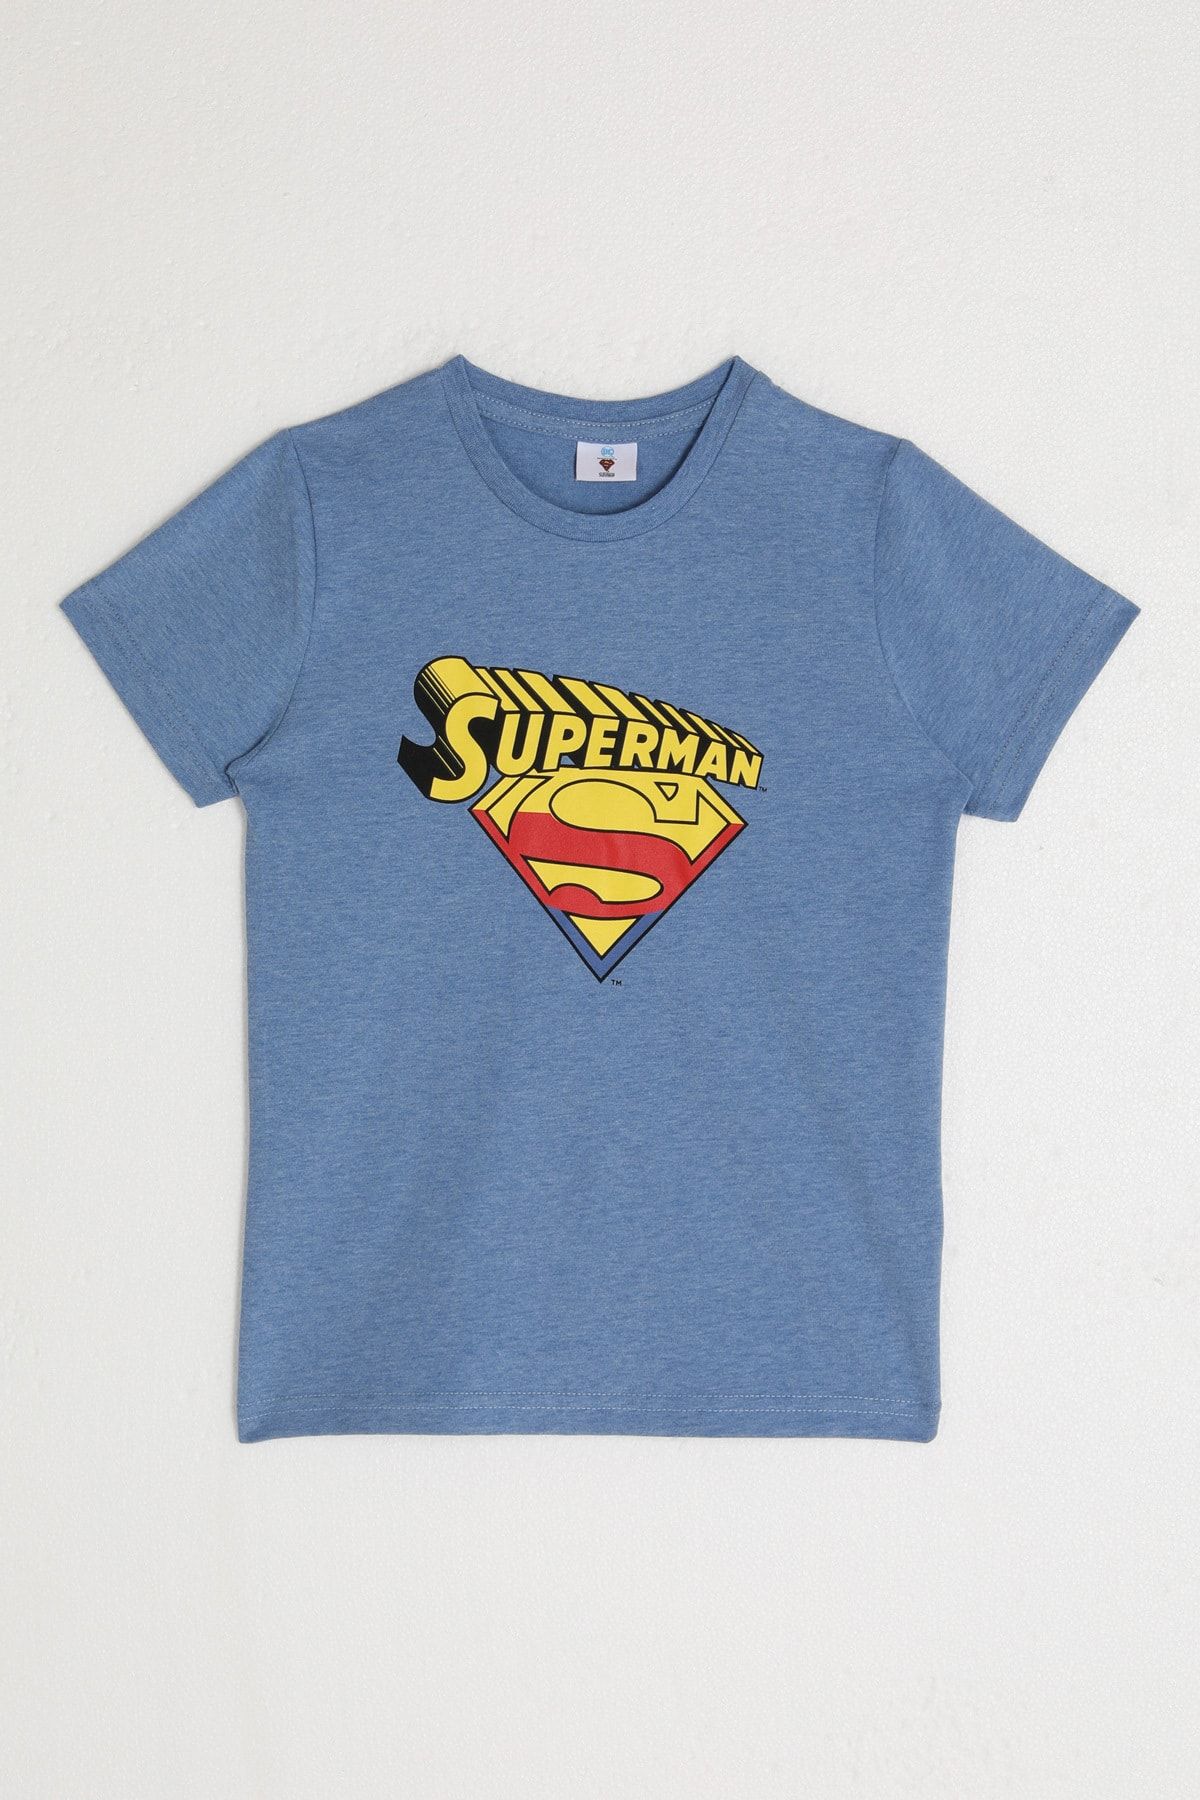 Superman Disney L1581 Lisanslı Erkek Çocuk Kısa Kol T-shirt Koyu Mavi Melanj